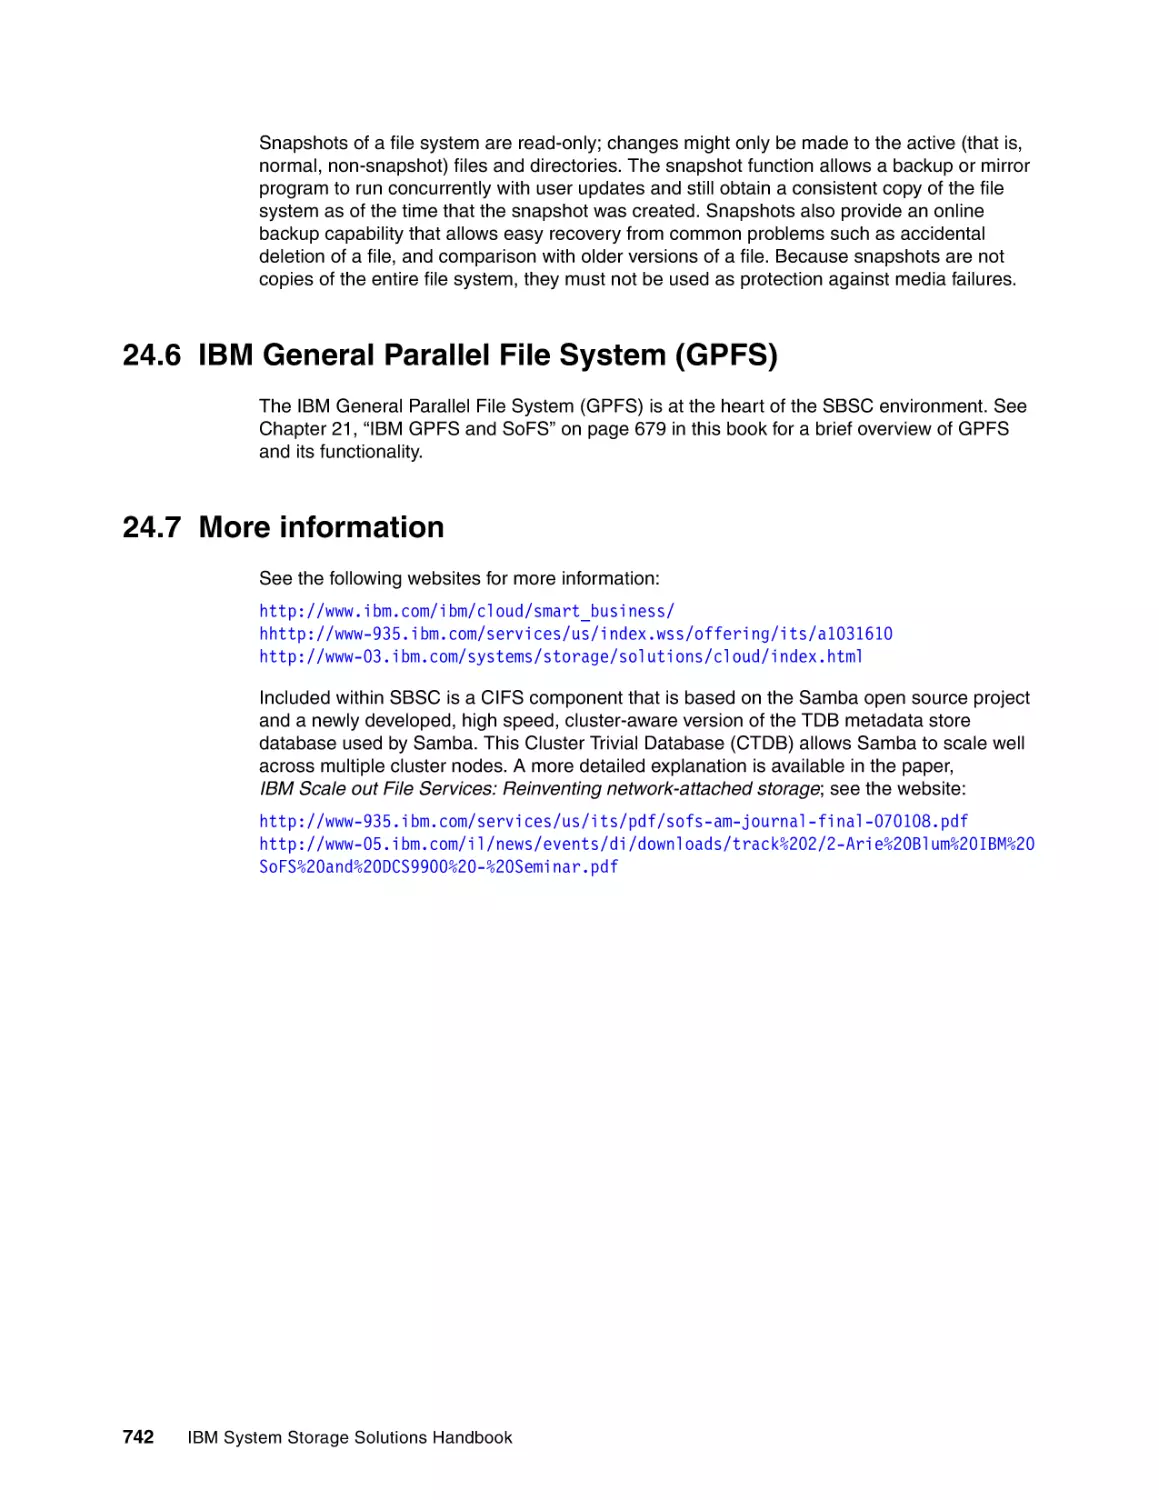 24.6 IBM General Parallel File System (GPFS)
24.7 More information